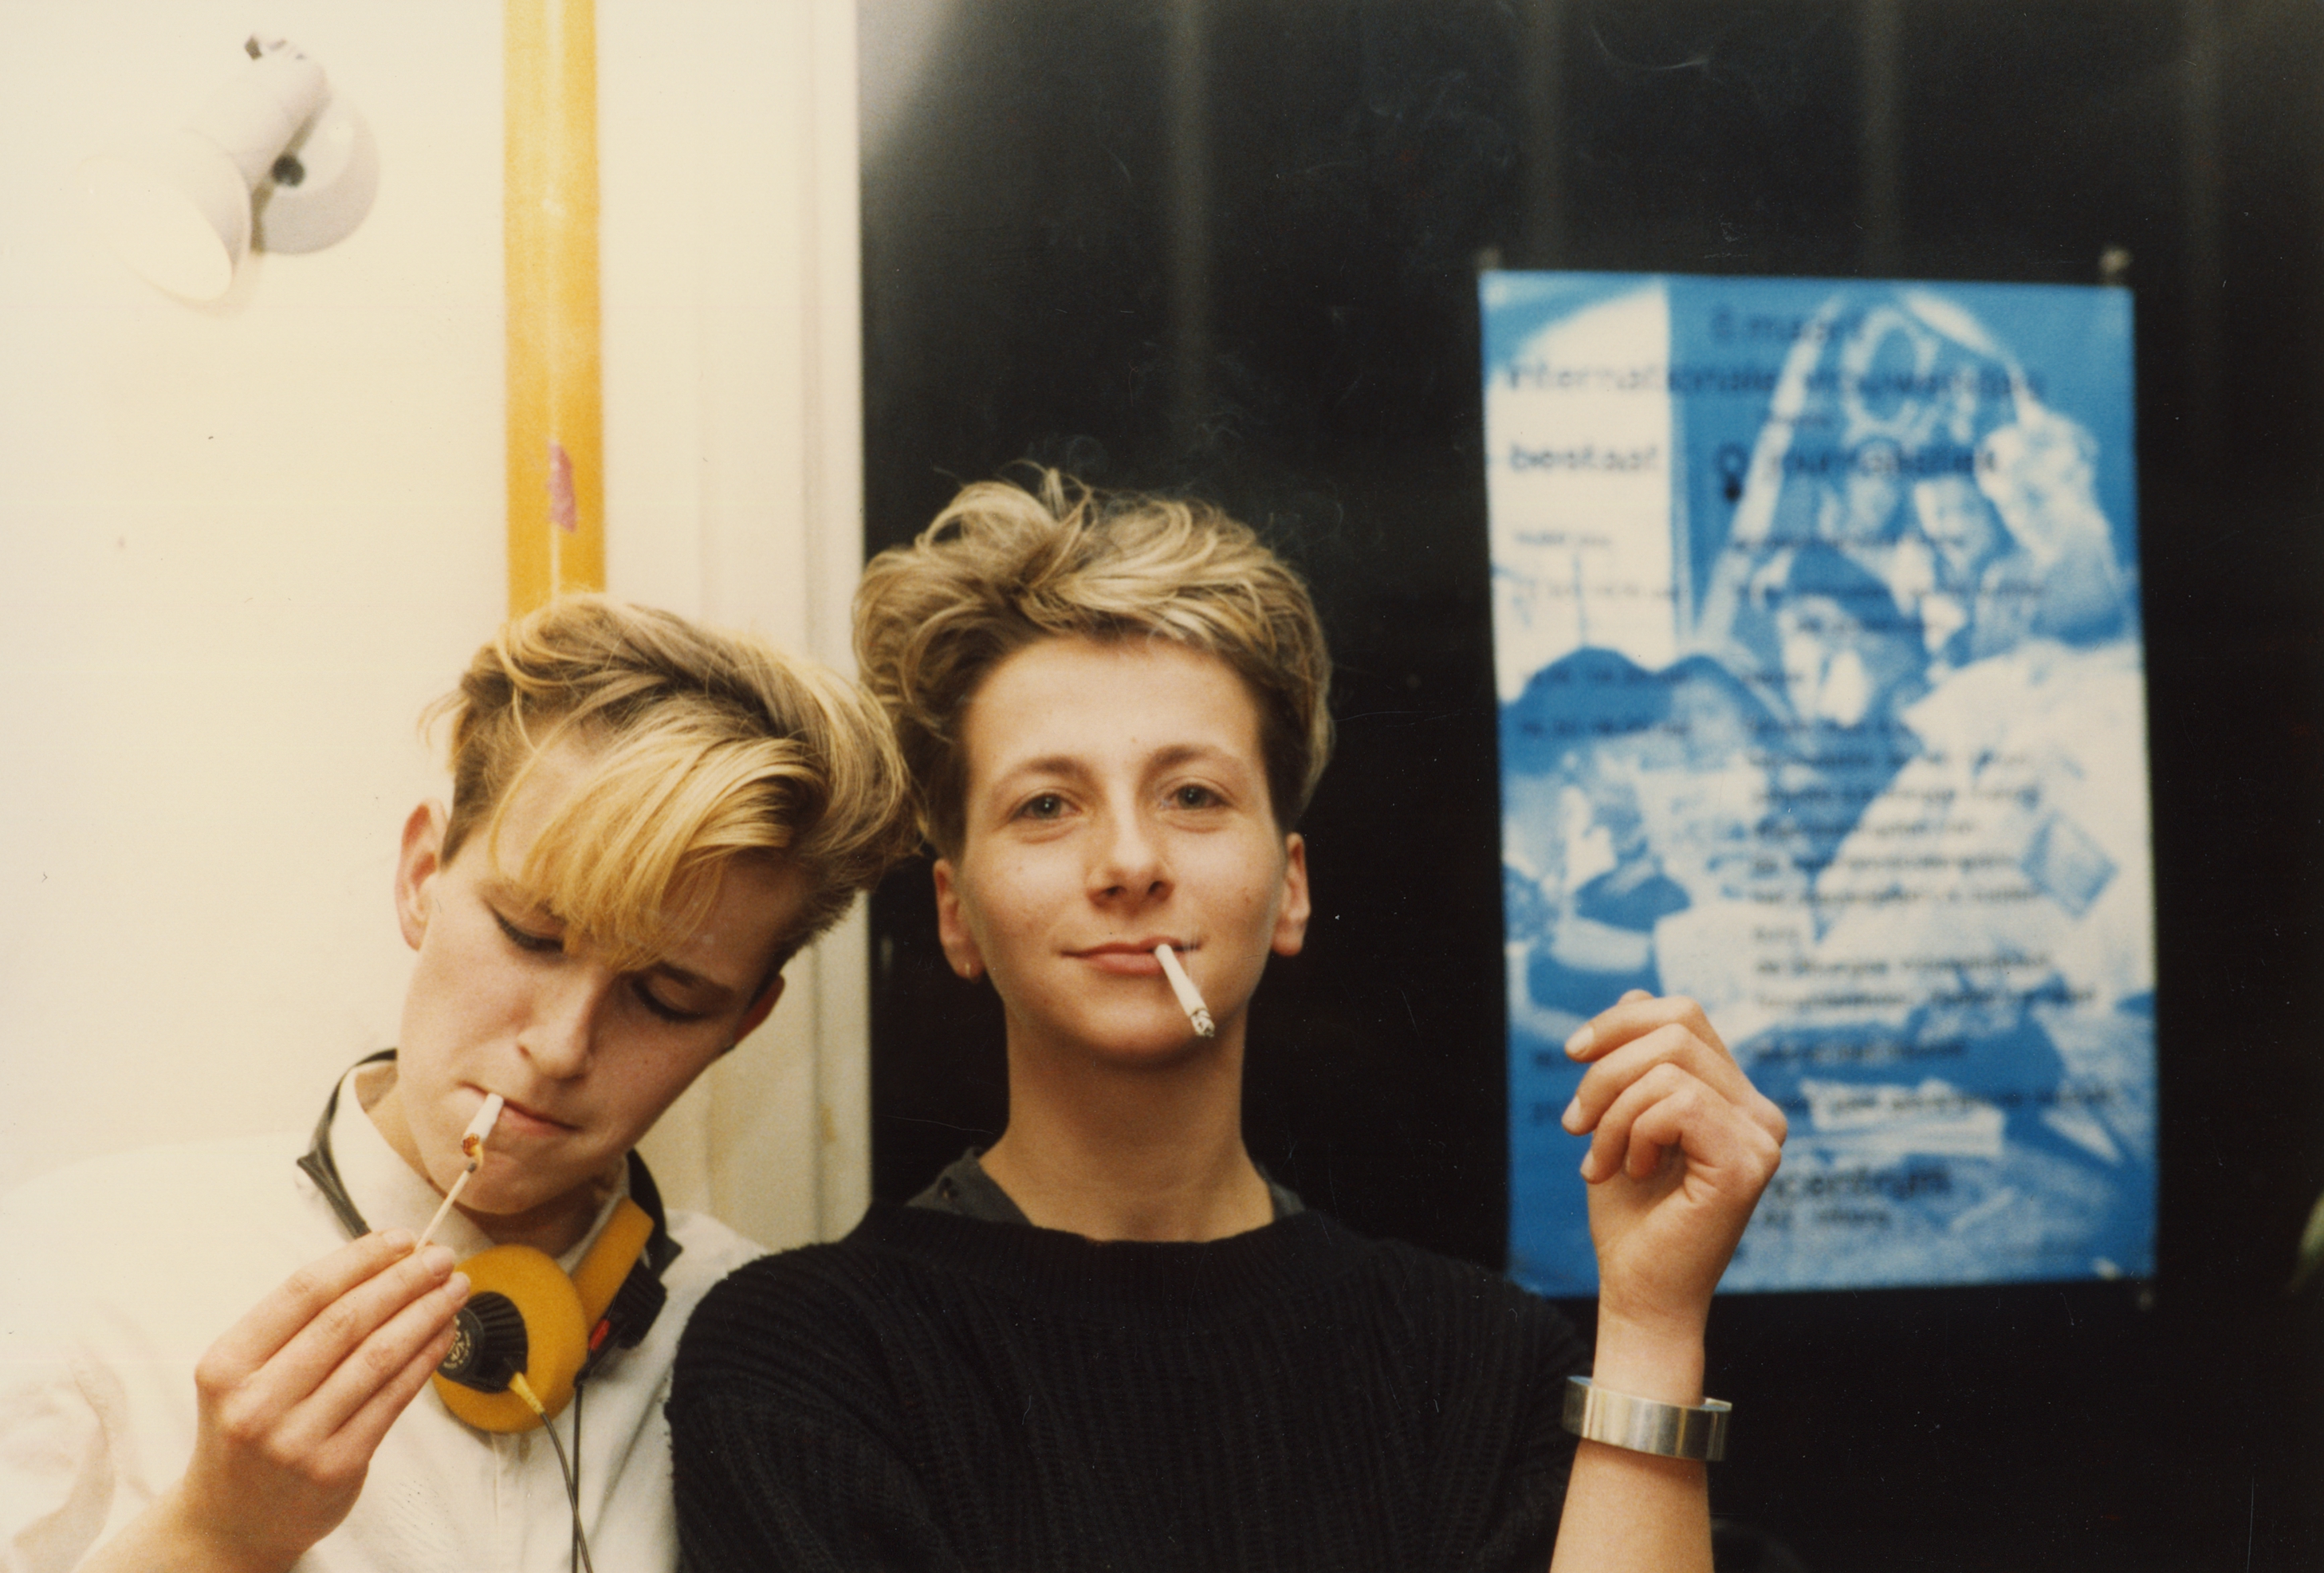 Twee rokende vrouwen bij het Vrouwencentrum tijdens Internationale vrouwendag op 8 maart 1986. Fotograaf: Feniks / Vrouwencentrum, collectie Regionaal Archief Tilburg.